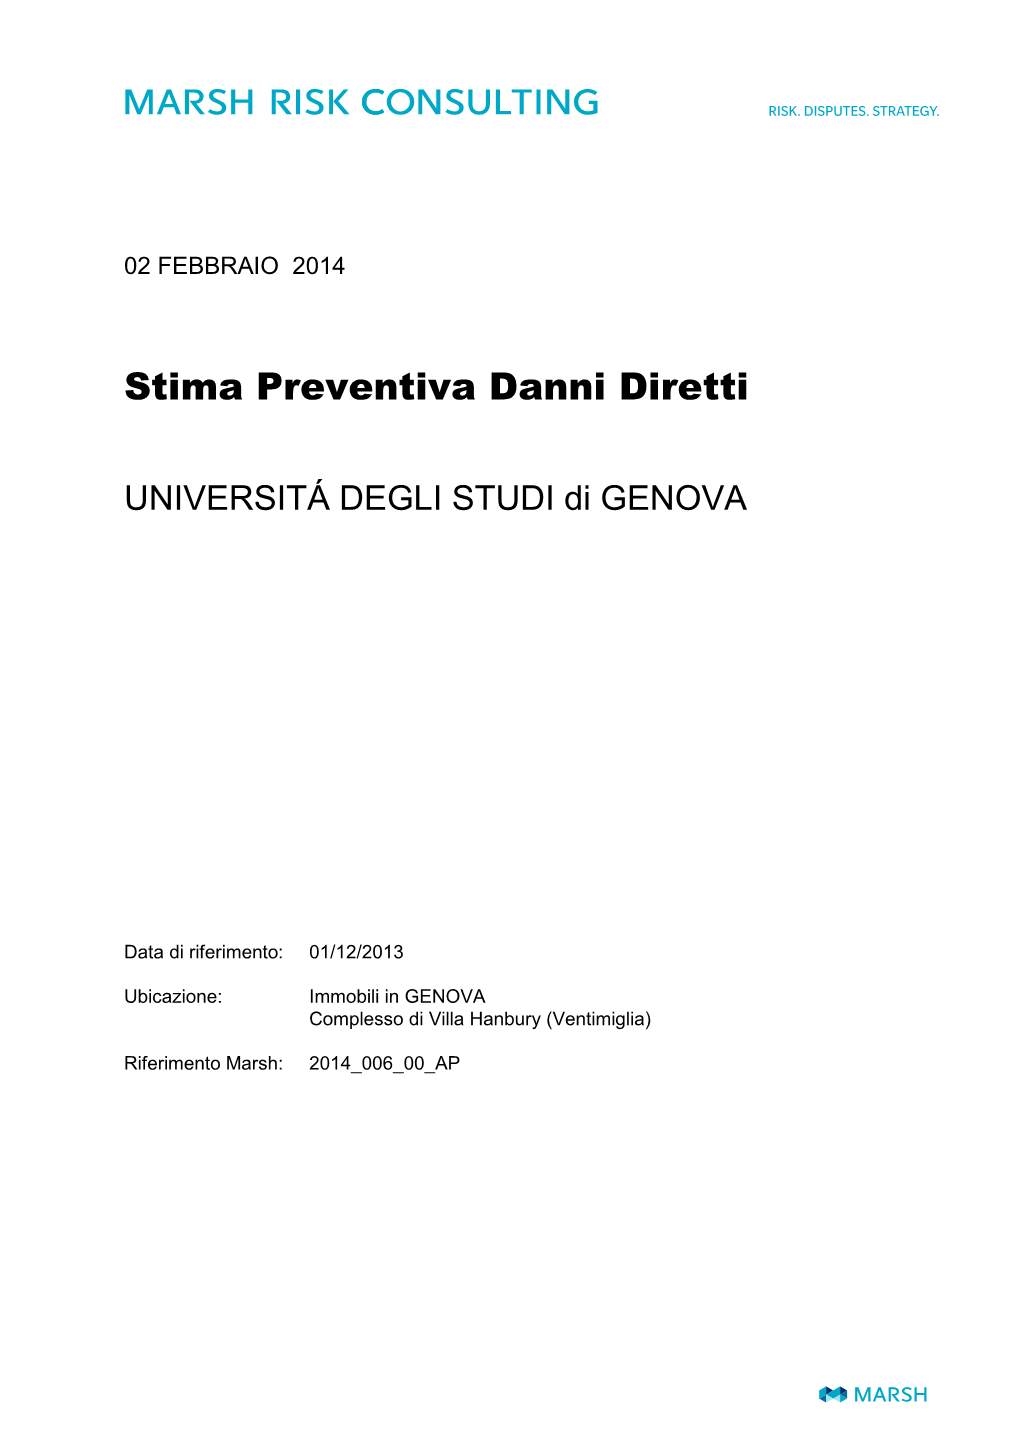 Universita Di Genova Stima Al 01-12-2013 Solo Fabbricato